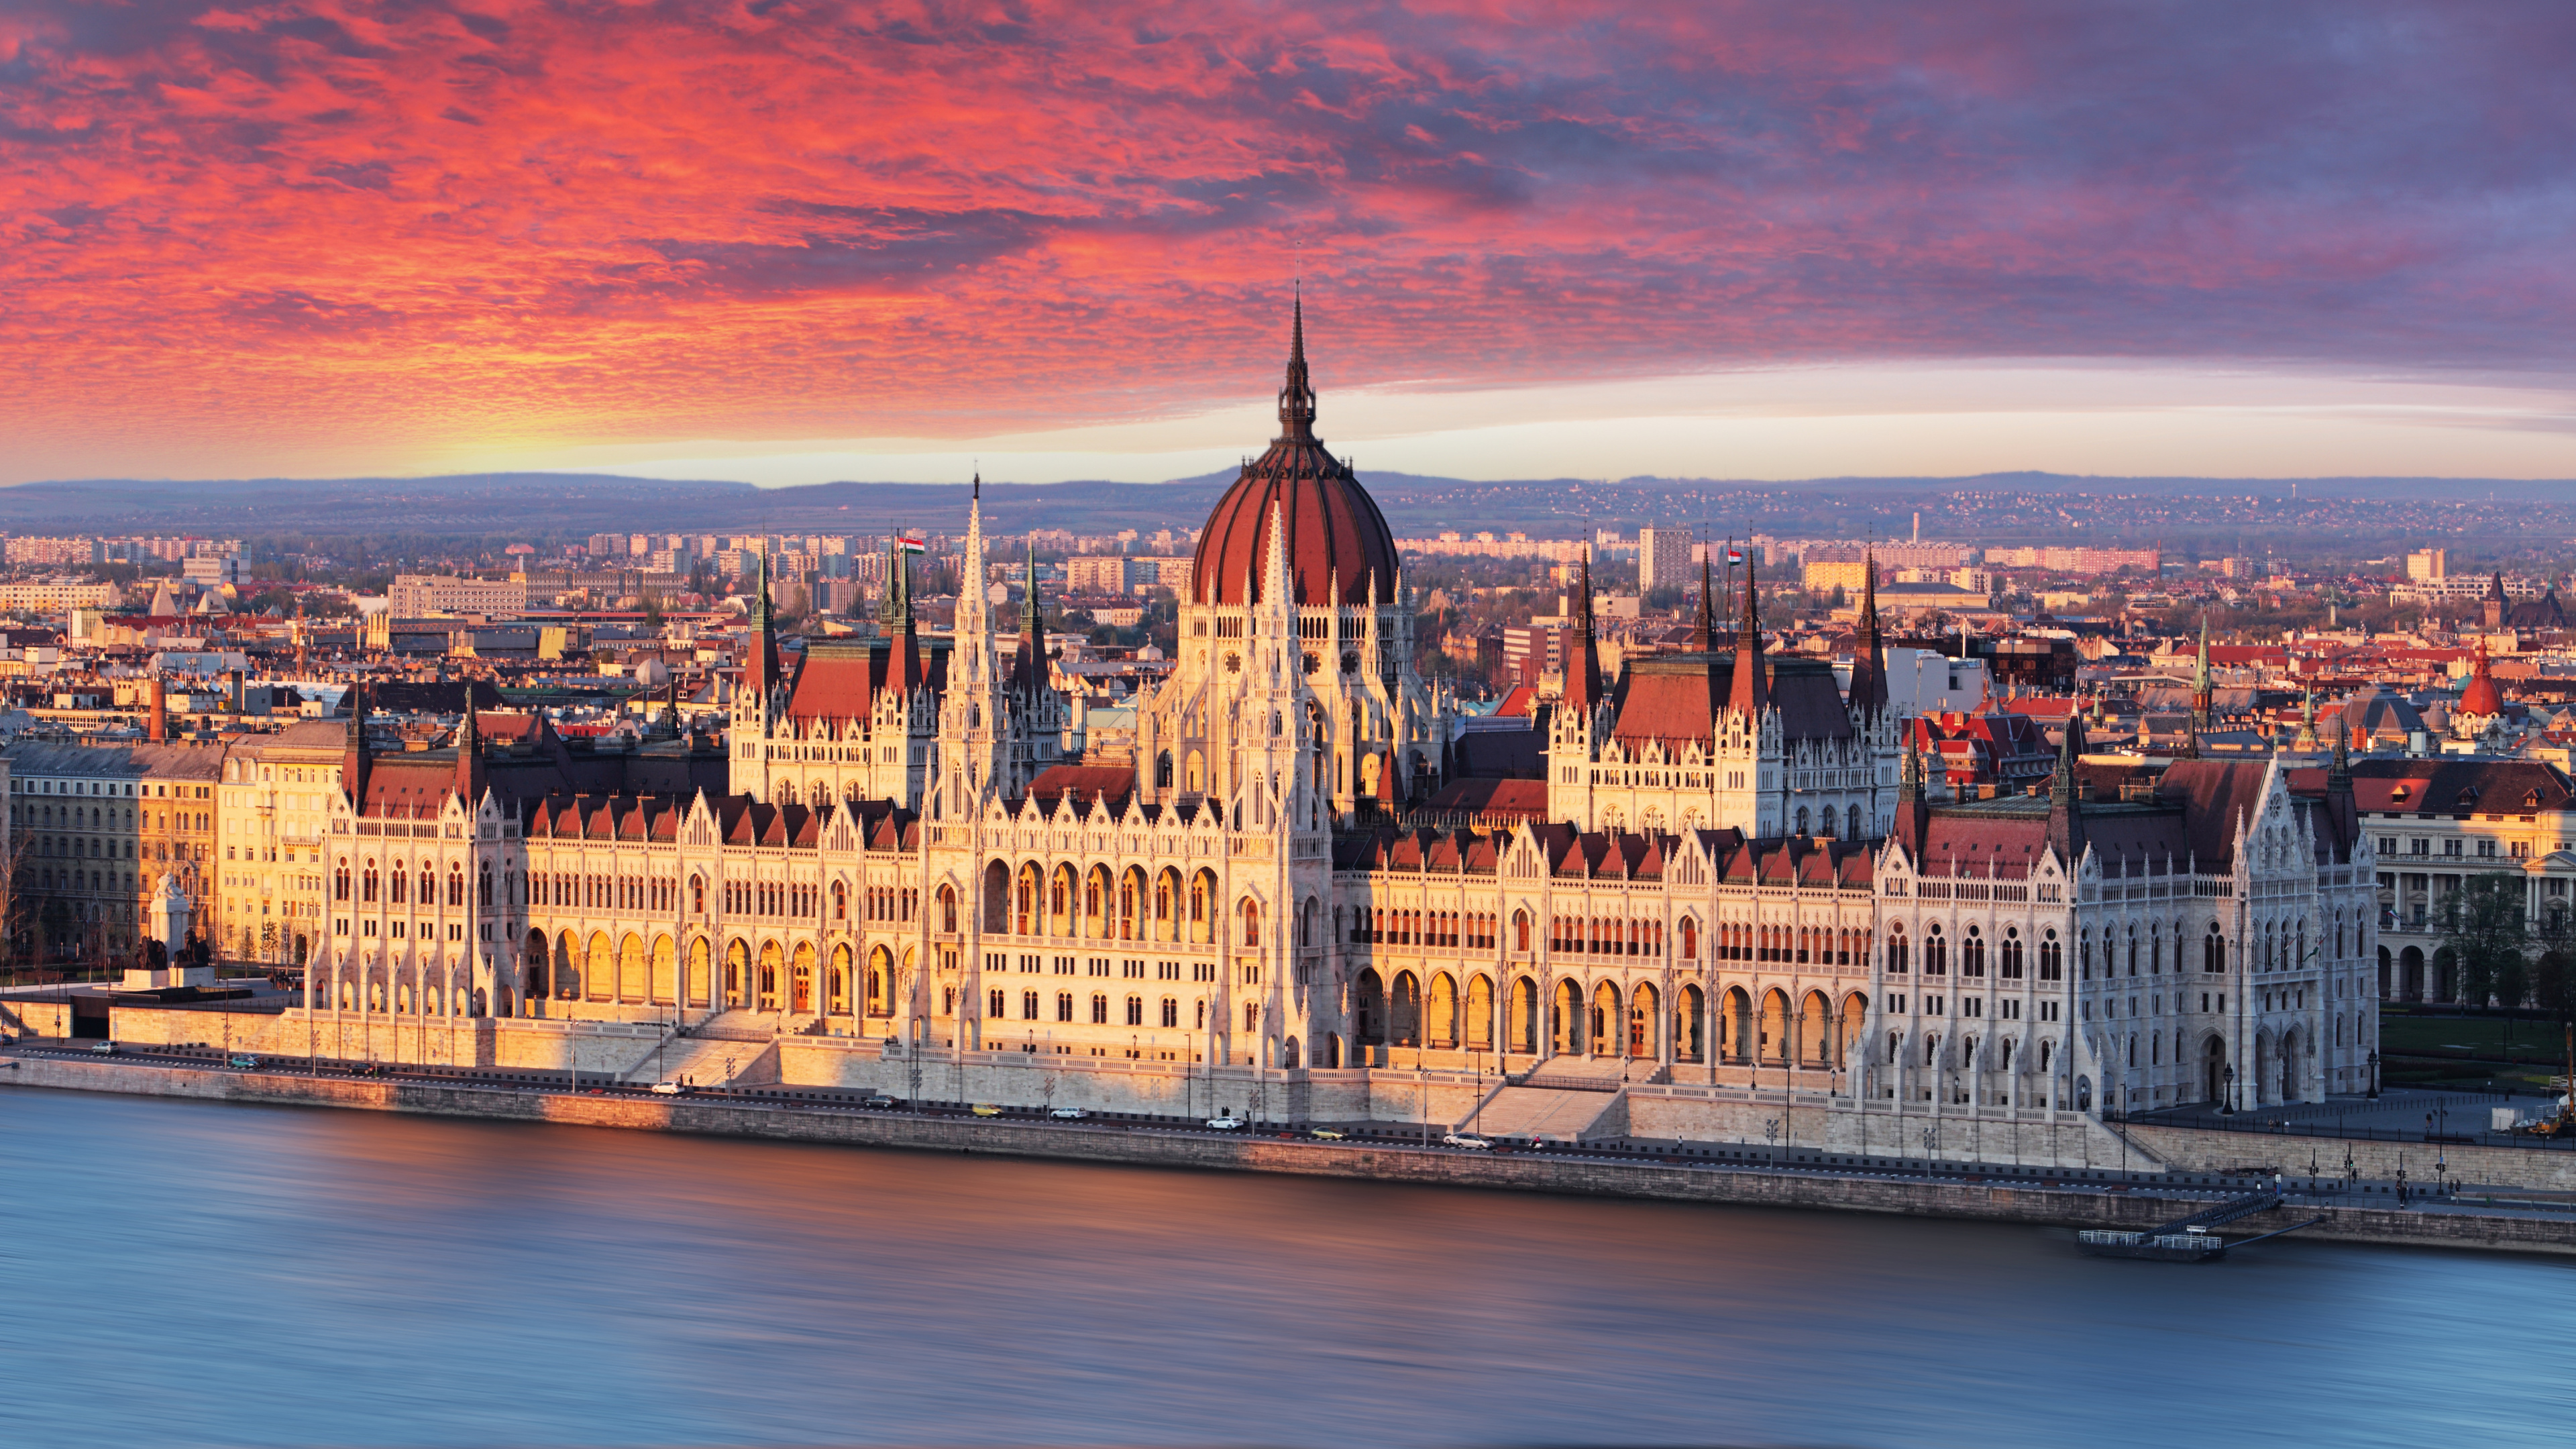 匈牙利议会大厦, 里程碑, 城市, 城市景观, 天际线 壁纸 3840x2160 允许